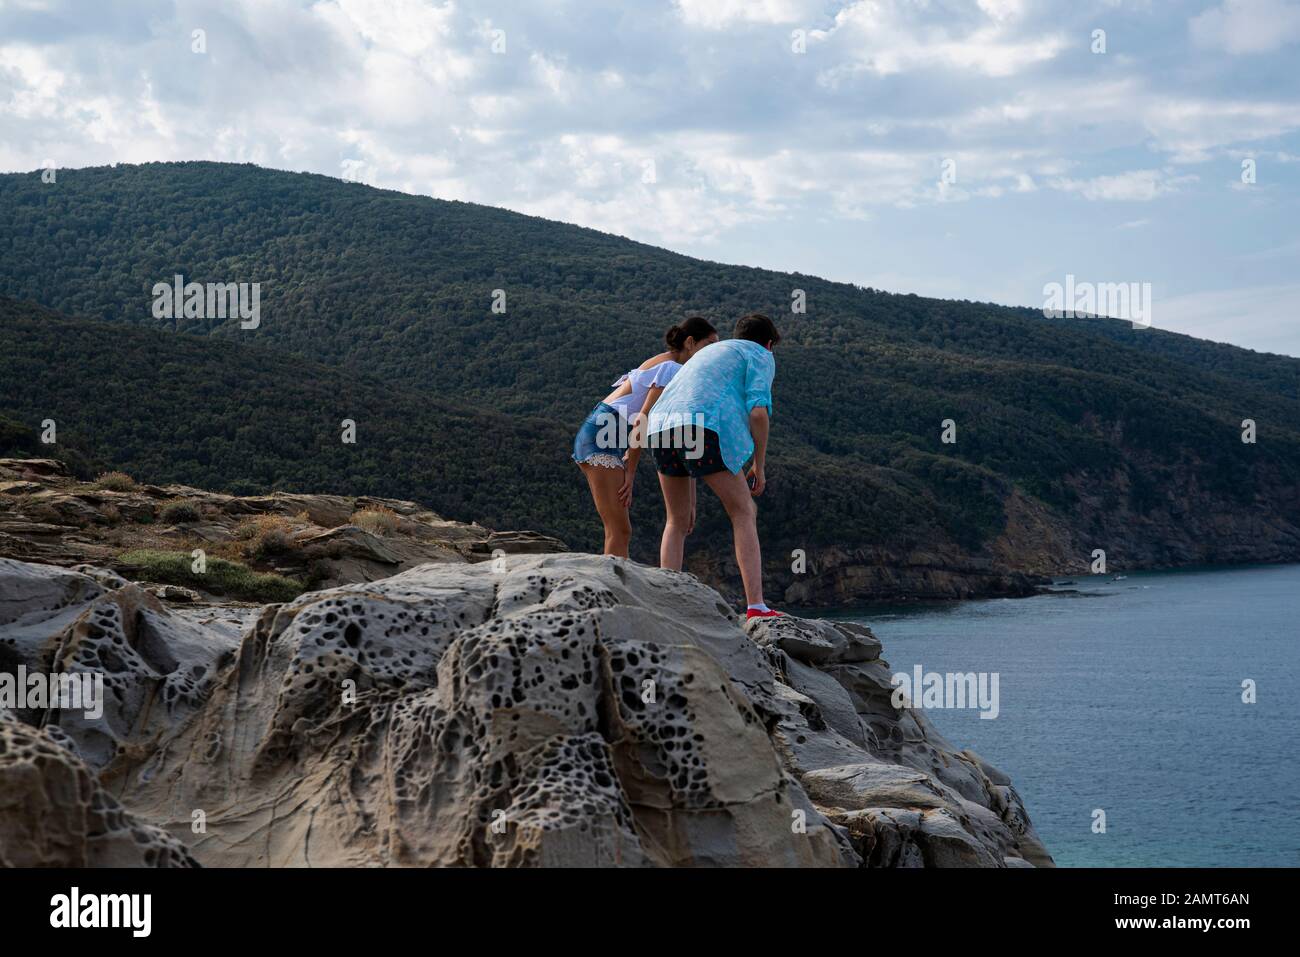 Uomo e donna in piedi su rocce che si affacciano sul mare, Golfo di Baratti, Italia Foto Stock